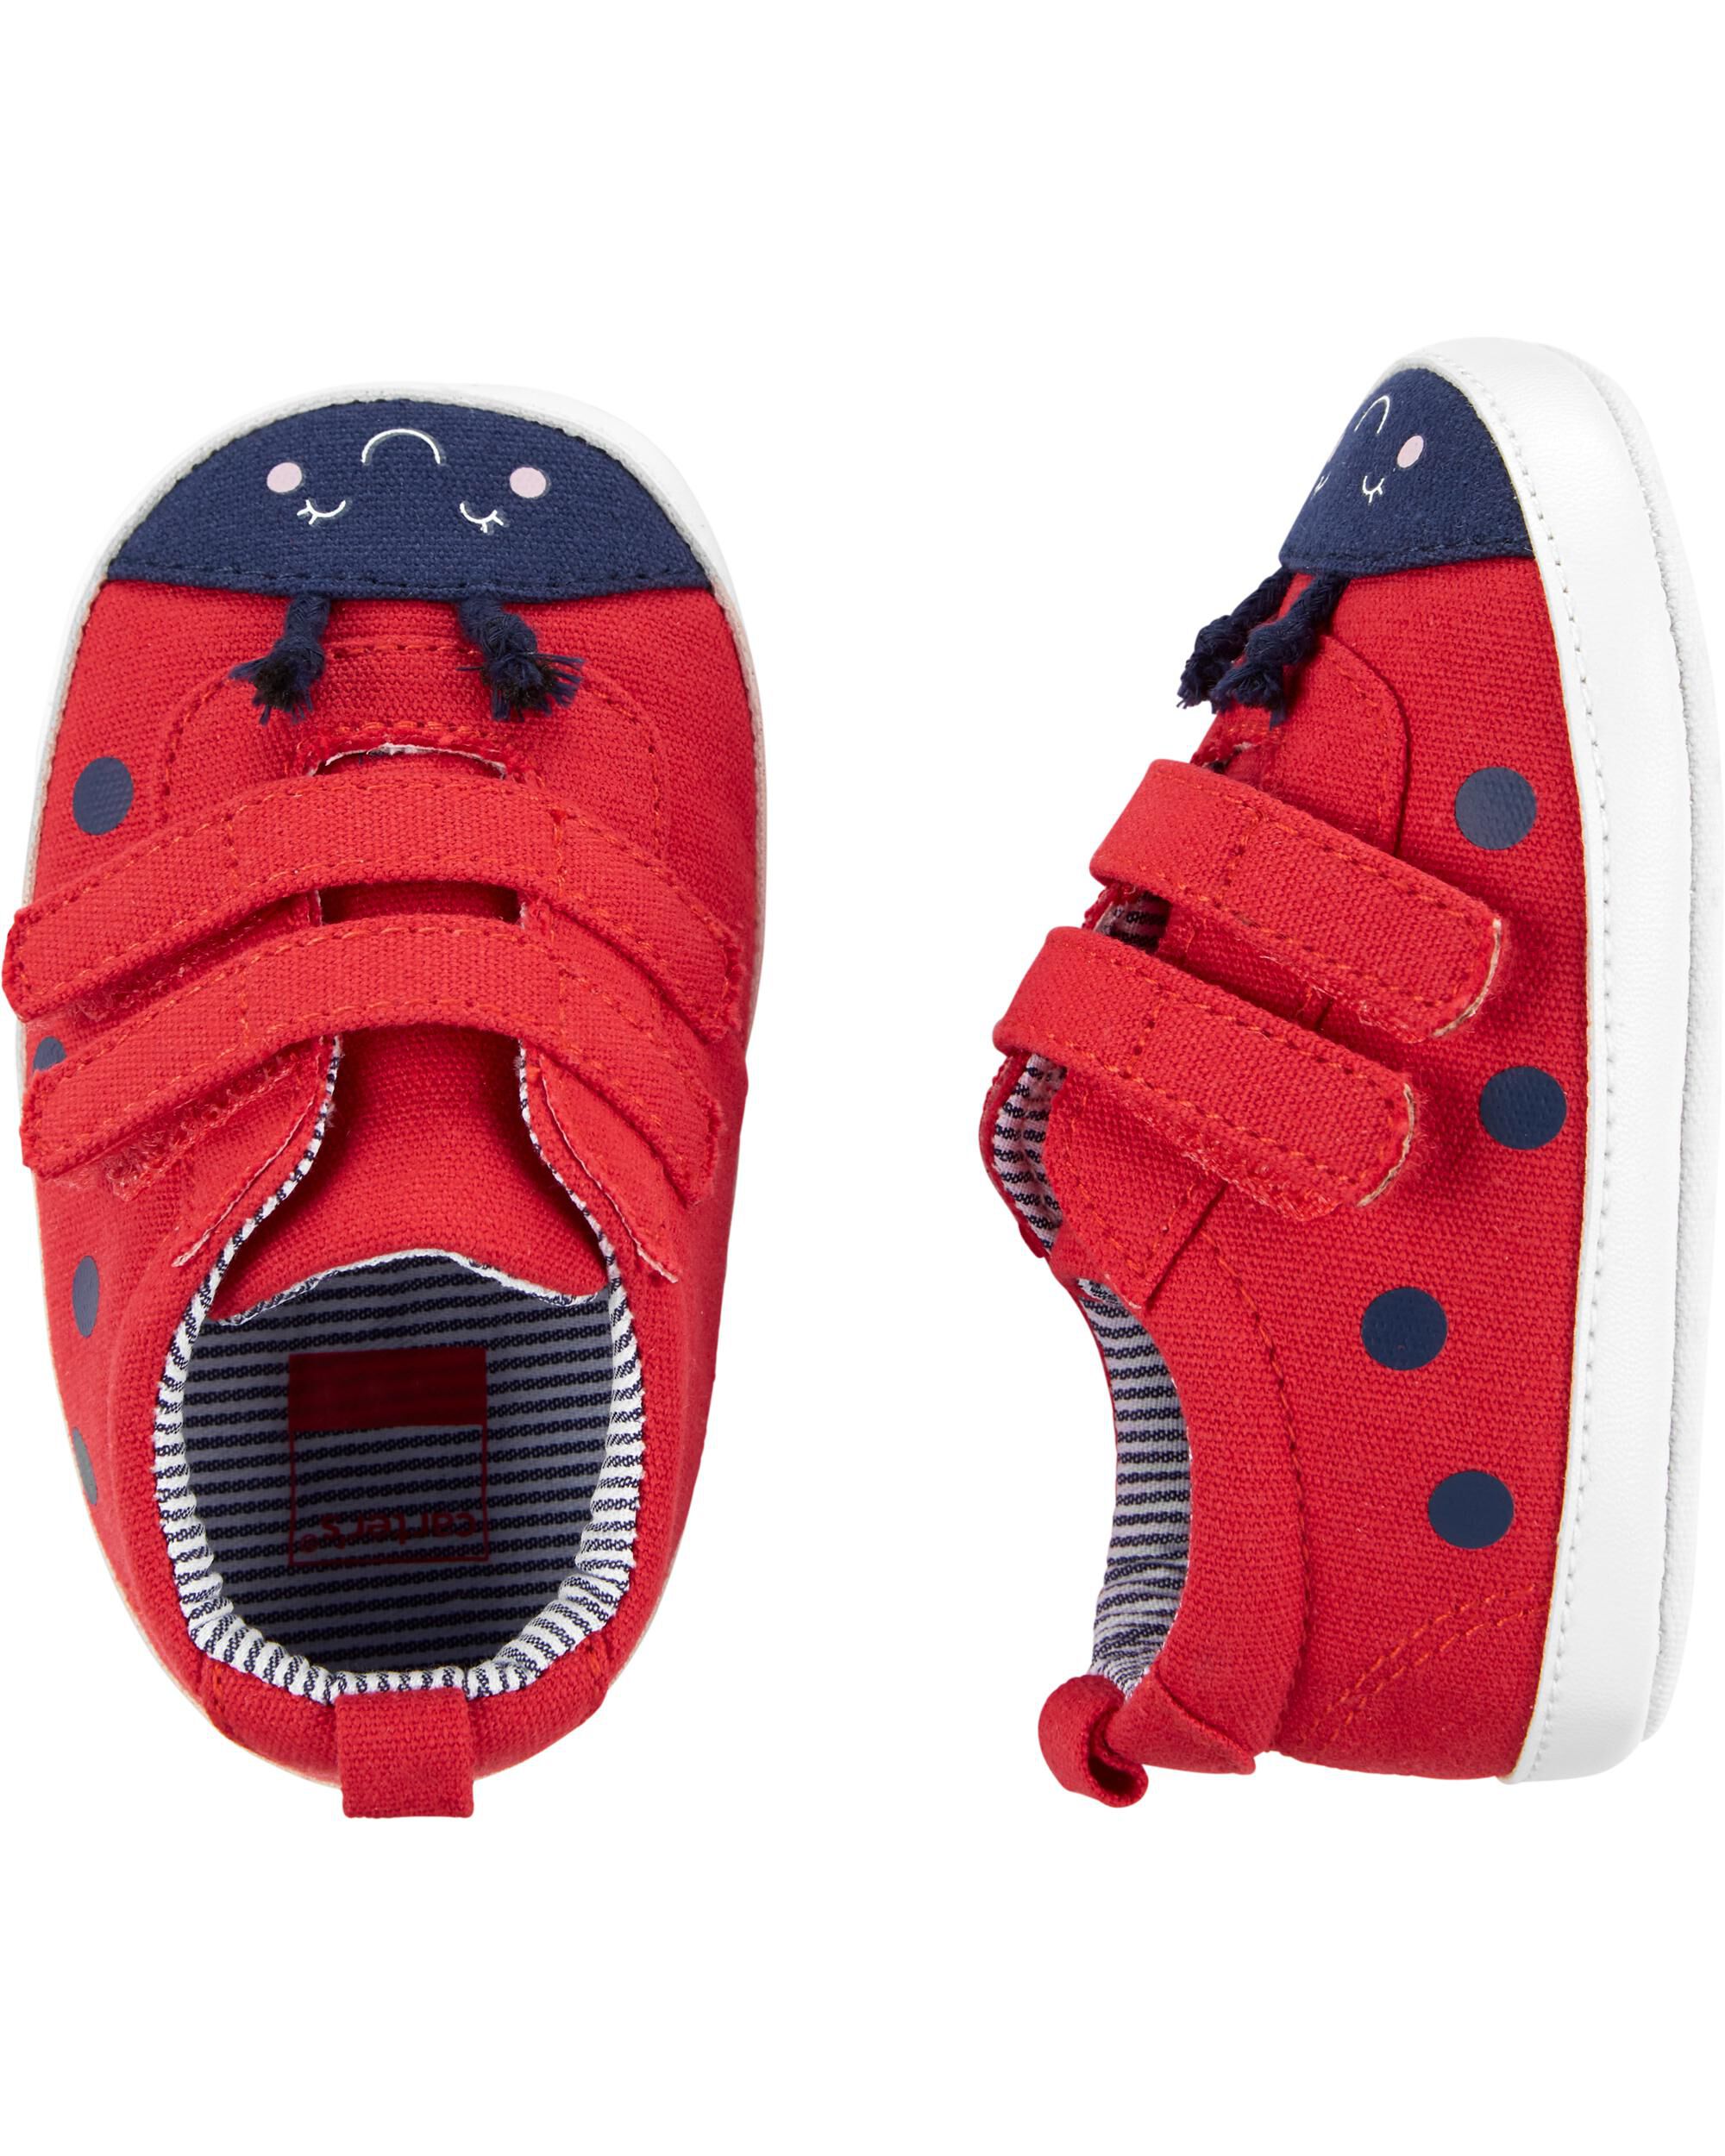 Carter's Ladybug Baby Shoes | oshkosh.com